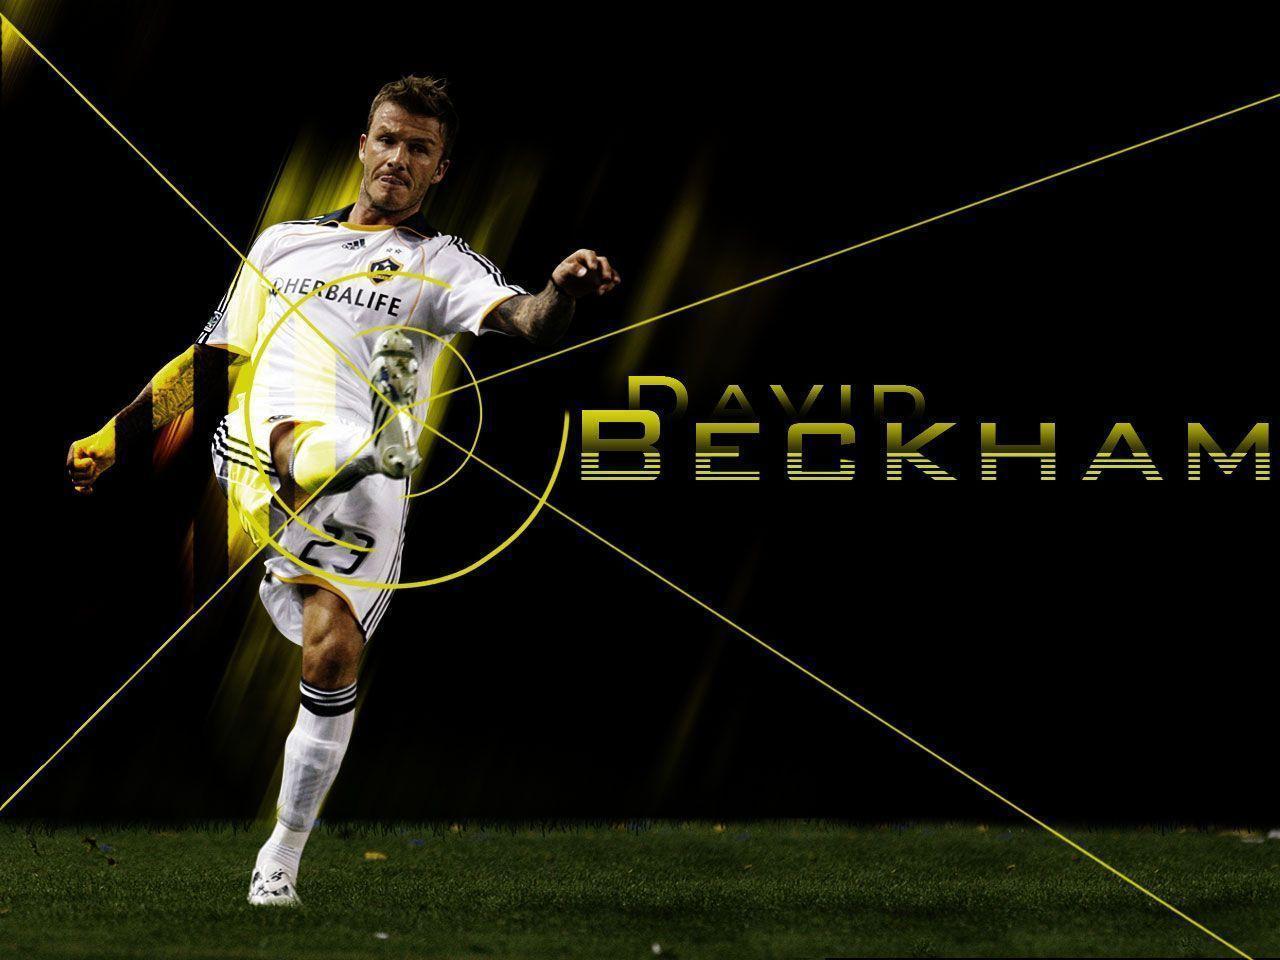 Tuyển Chọn Hình Ảnh David Beckham Cực Đẹp Không Thể Bỏ Qua